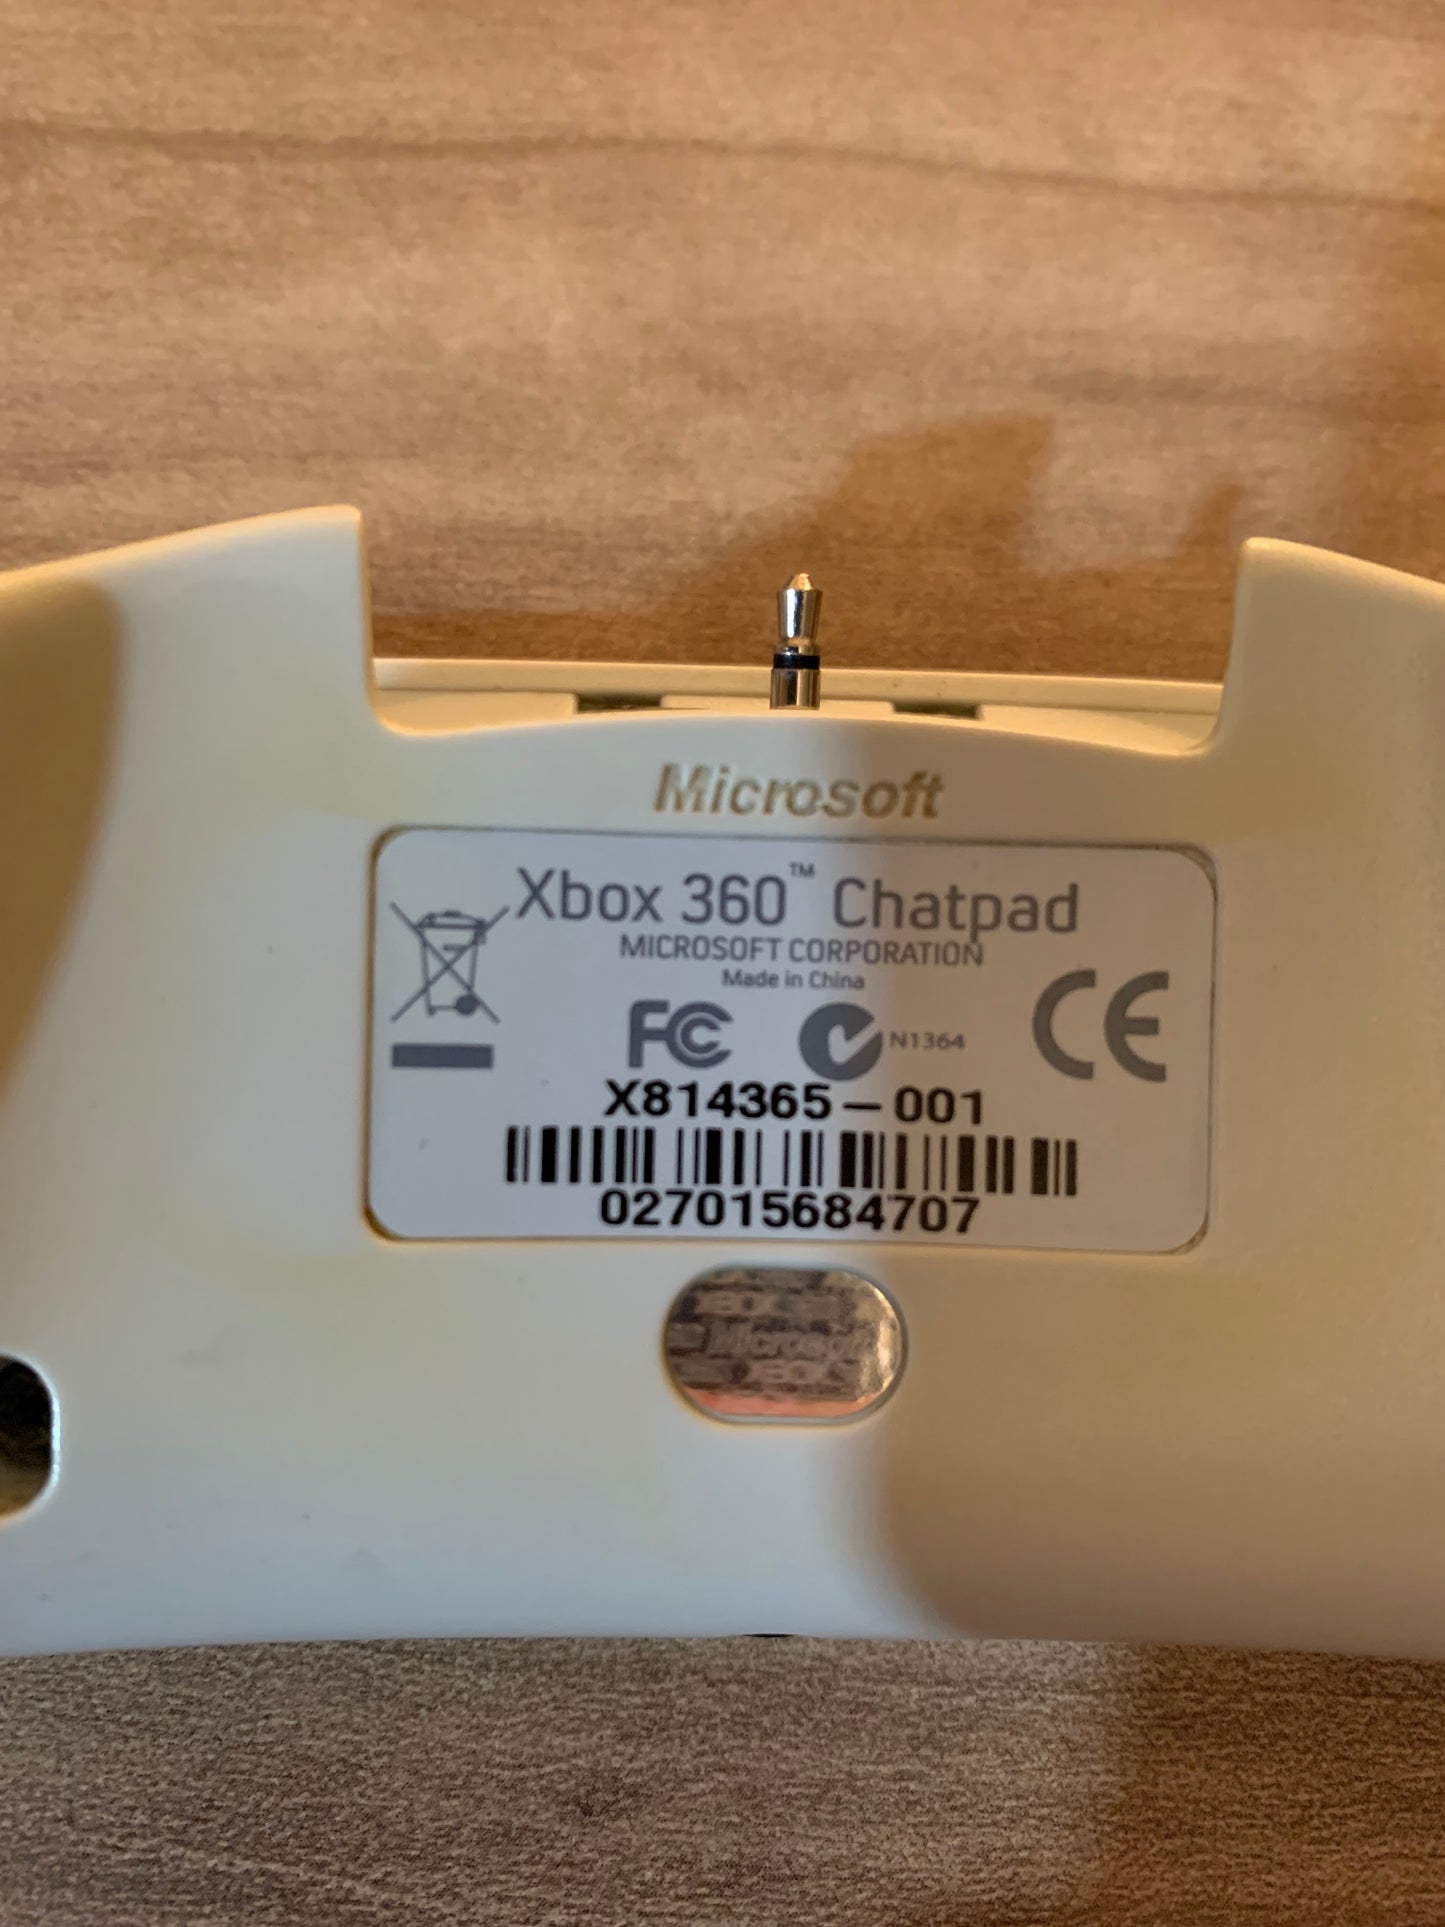 MiCROSOFT XBOX 360 | CLAViER WiRELESS KEYPAD CHATPAD | MODEL X814365-001